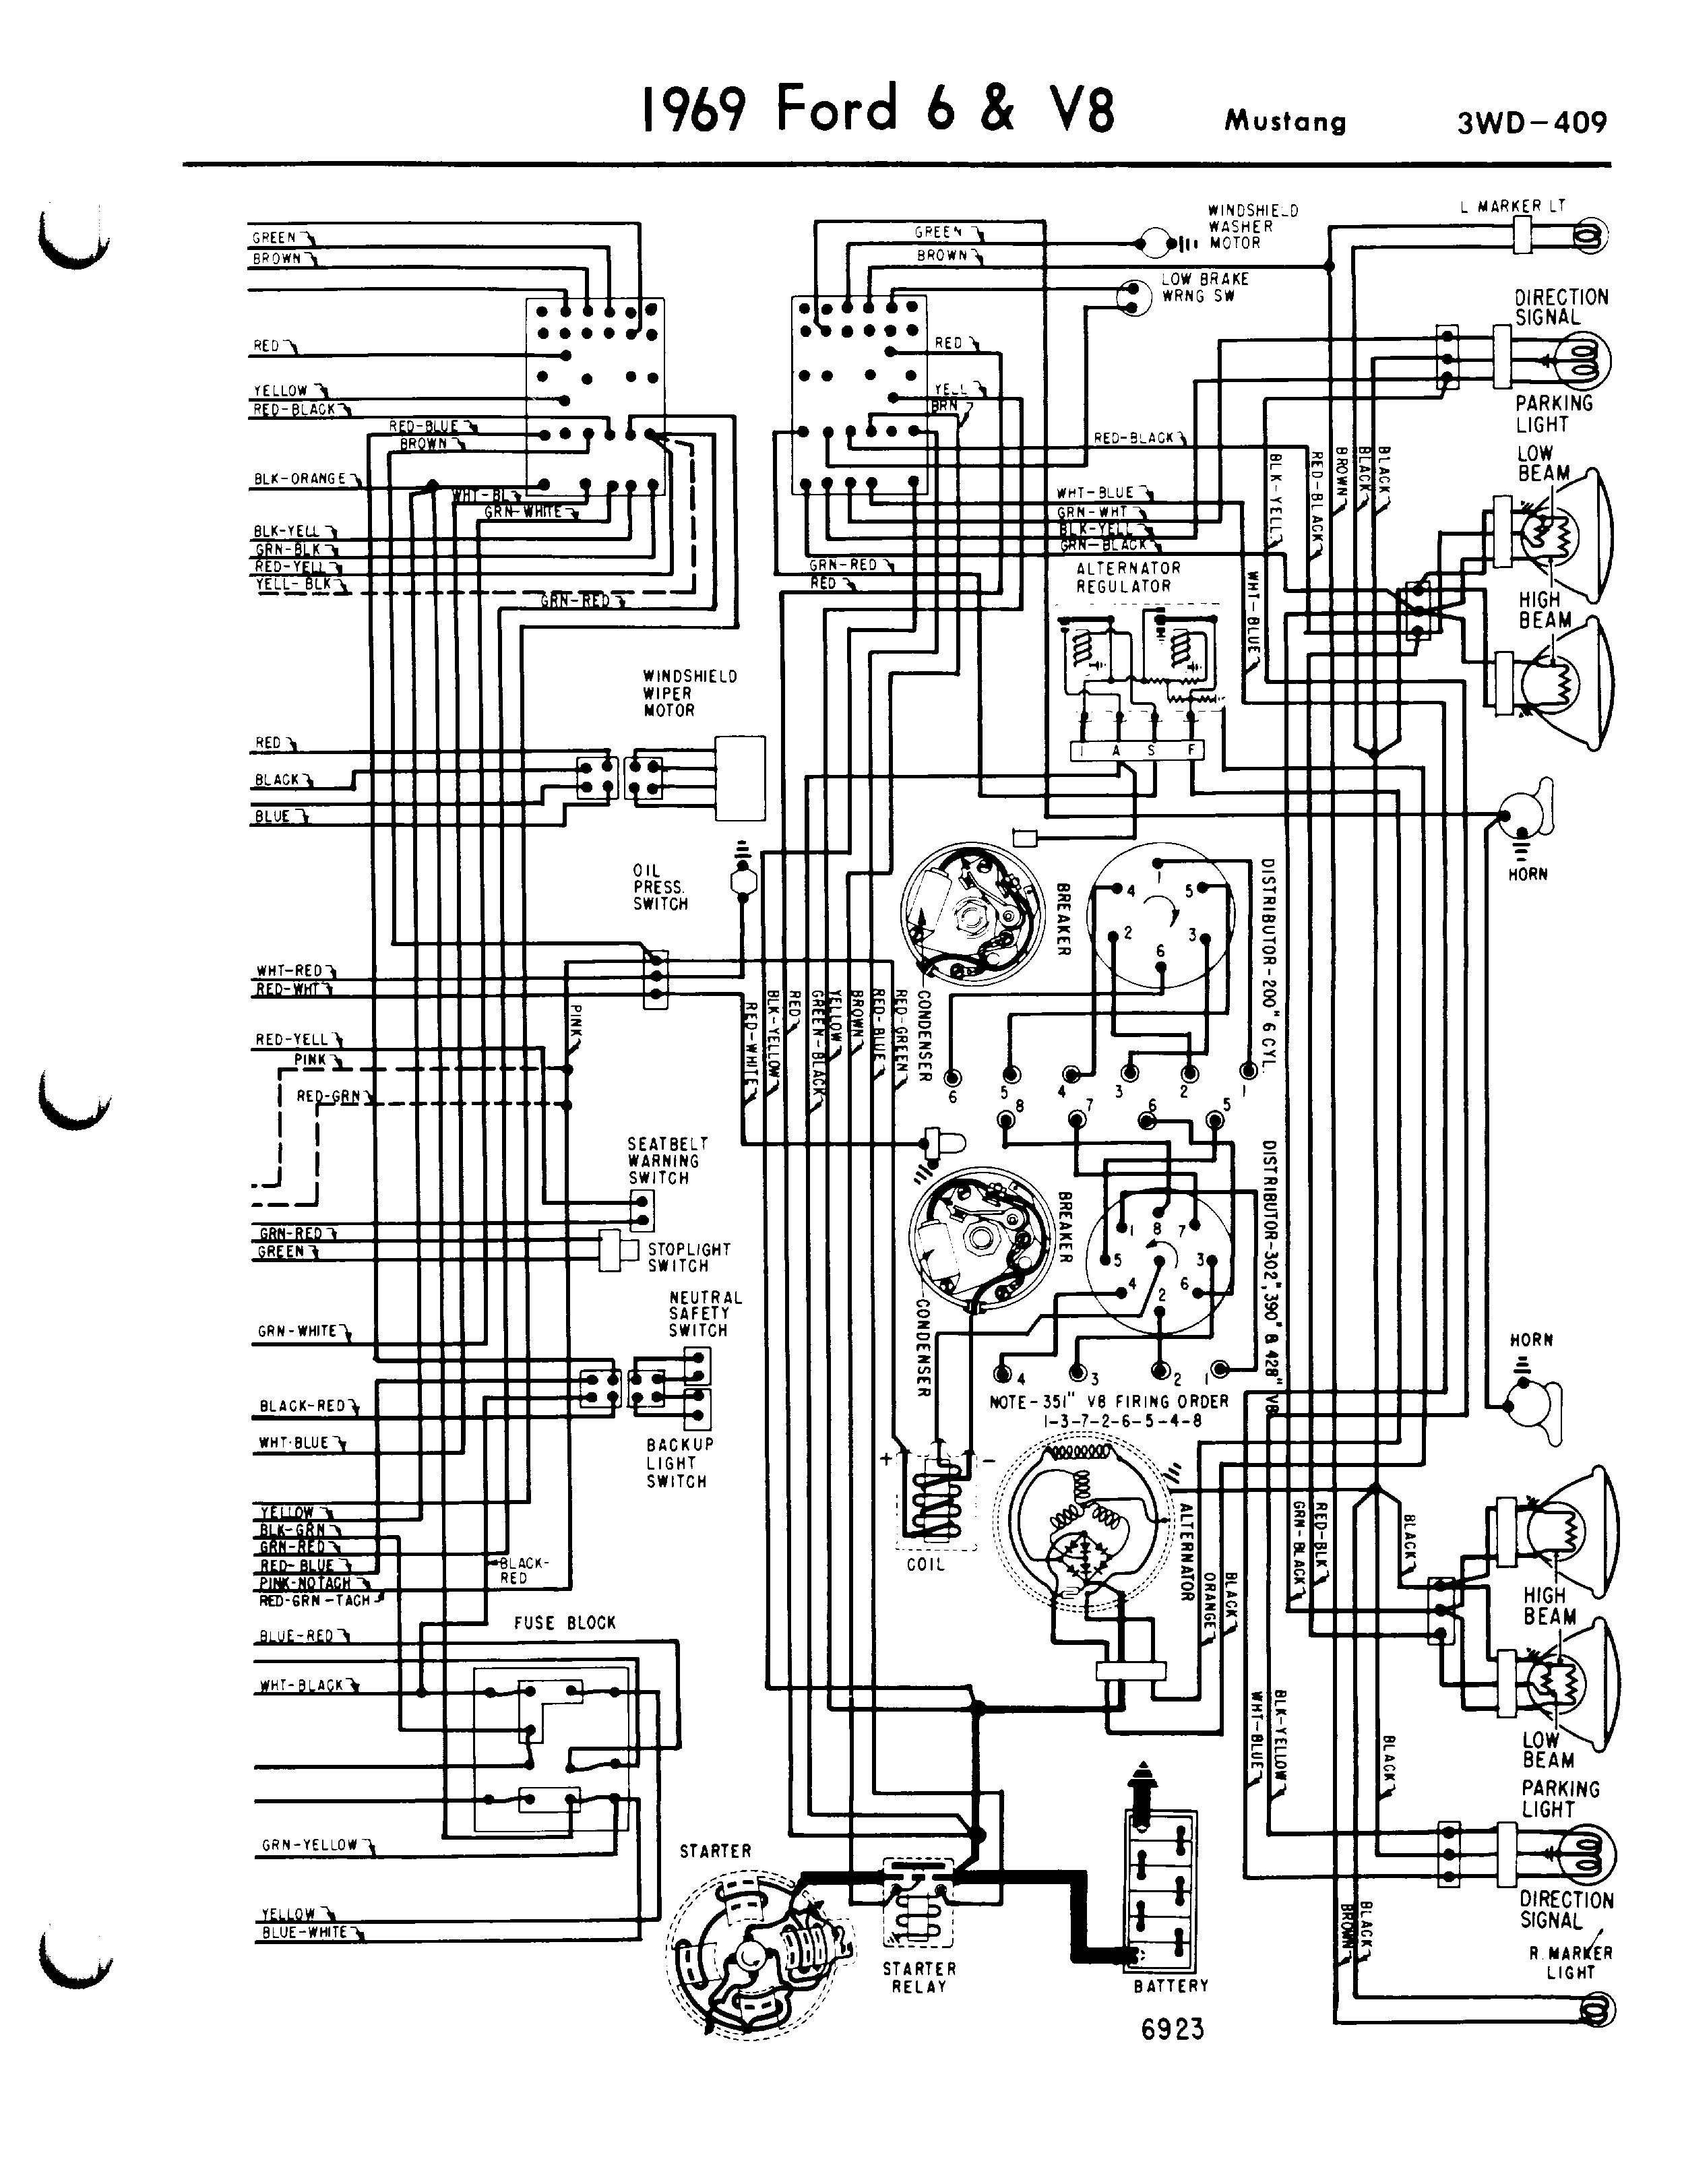 1968 Mustang Engine Wiring Diagram Mustang Wiring Diagram ford Mustang Alternator Wiring Diagram 2007 Of 1968 Mustang Engine Wiring Diagram